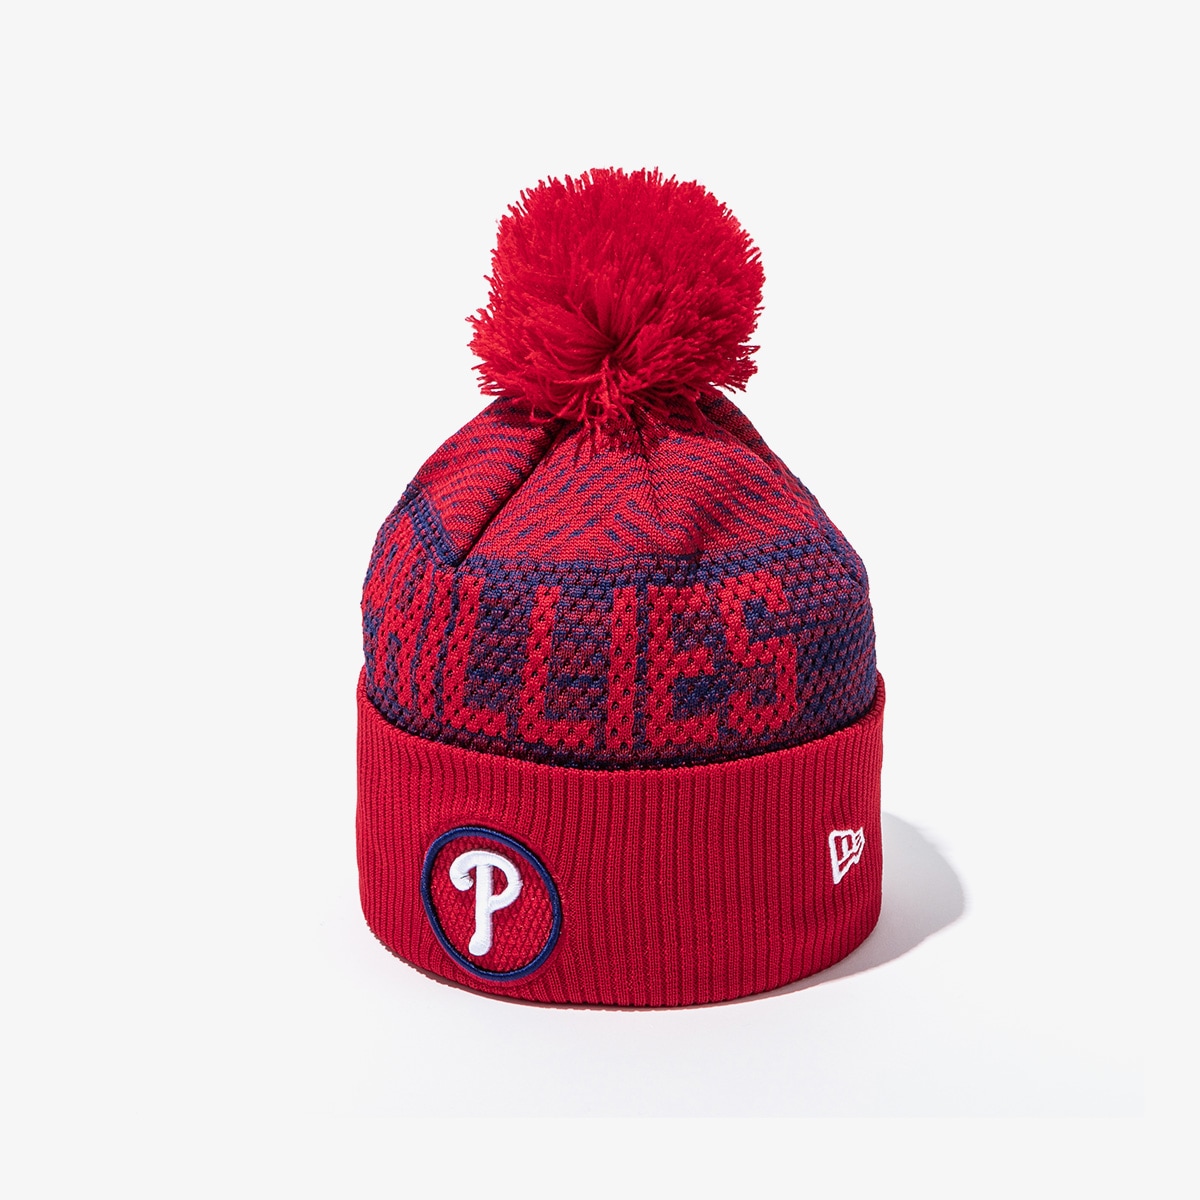 驚きの値段 [正規品]MLBクラブハウスフィラデルフィアフィリススポーツビーニーレッド 60079981[関税込 ニット帽